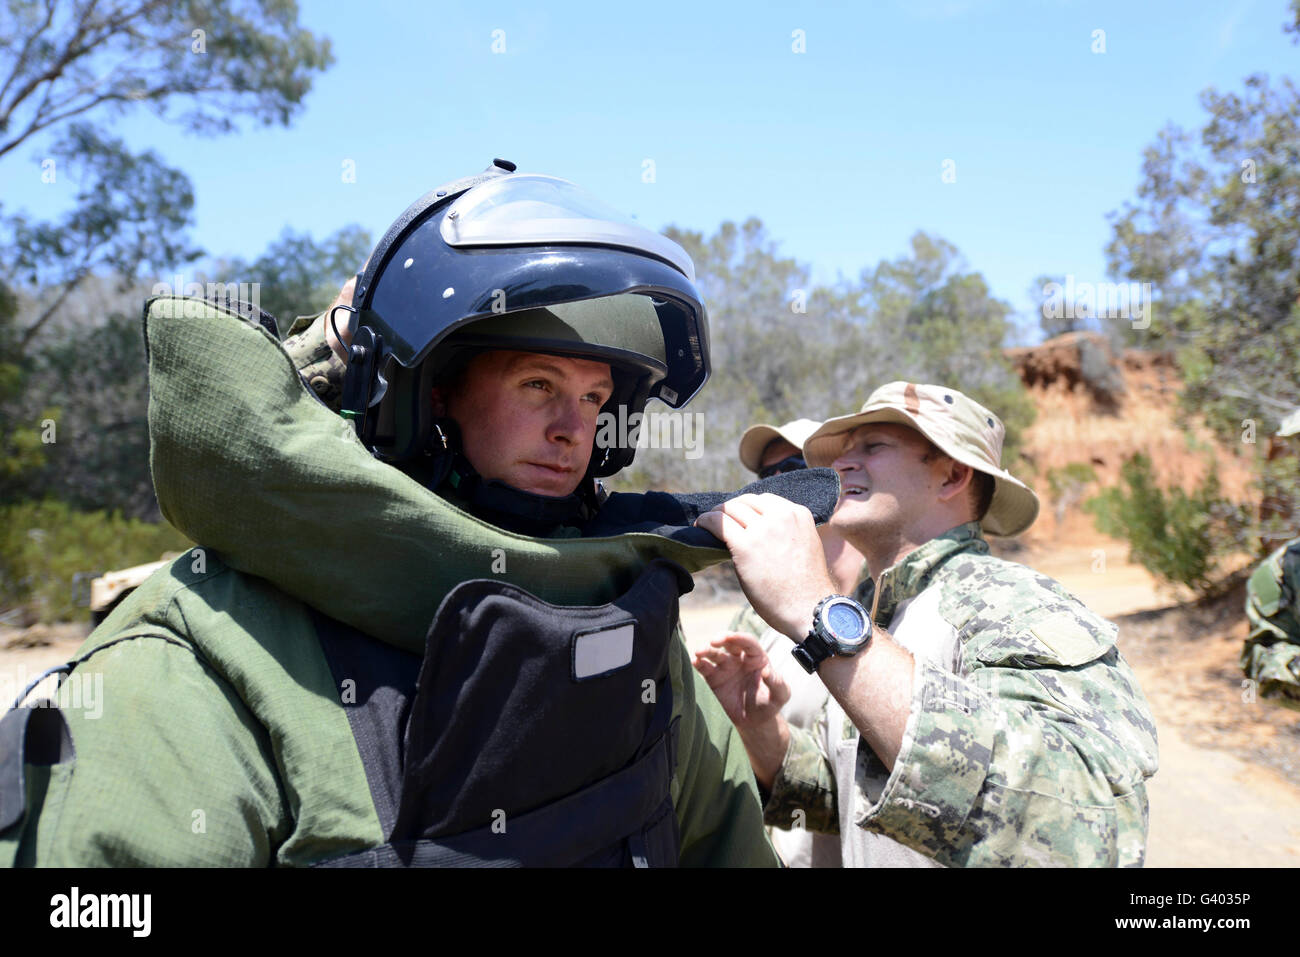 Soldado proporciona asistencia para poner una bomba en el traje. Foto de stock